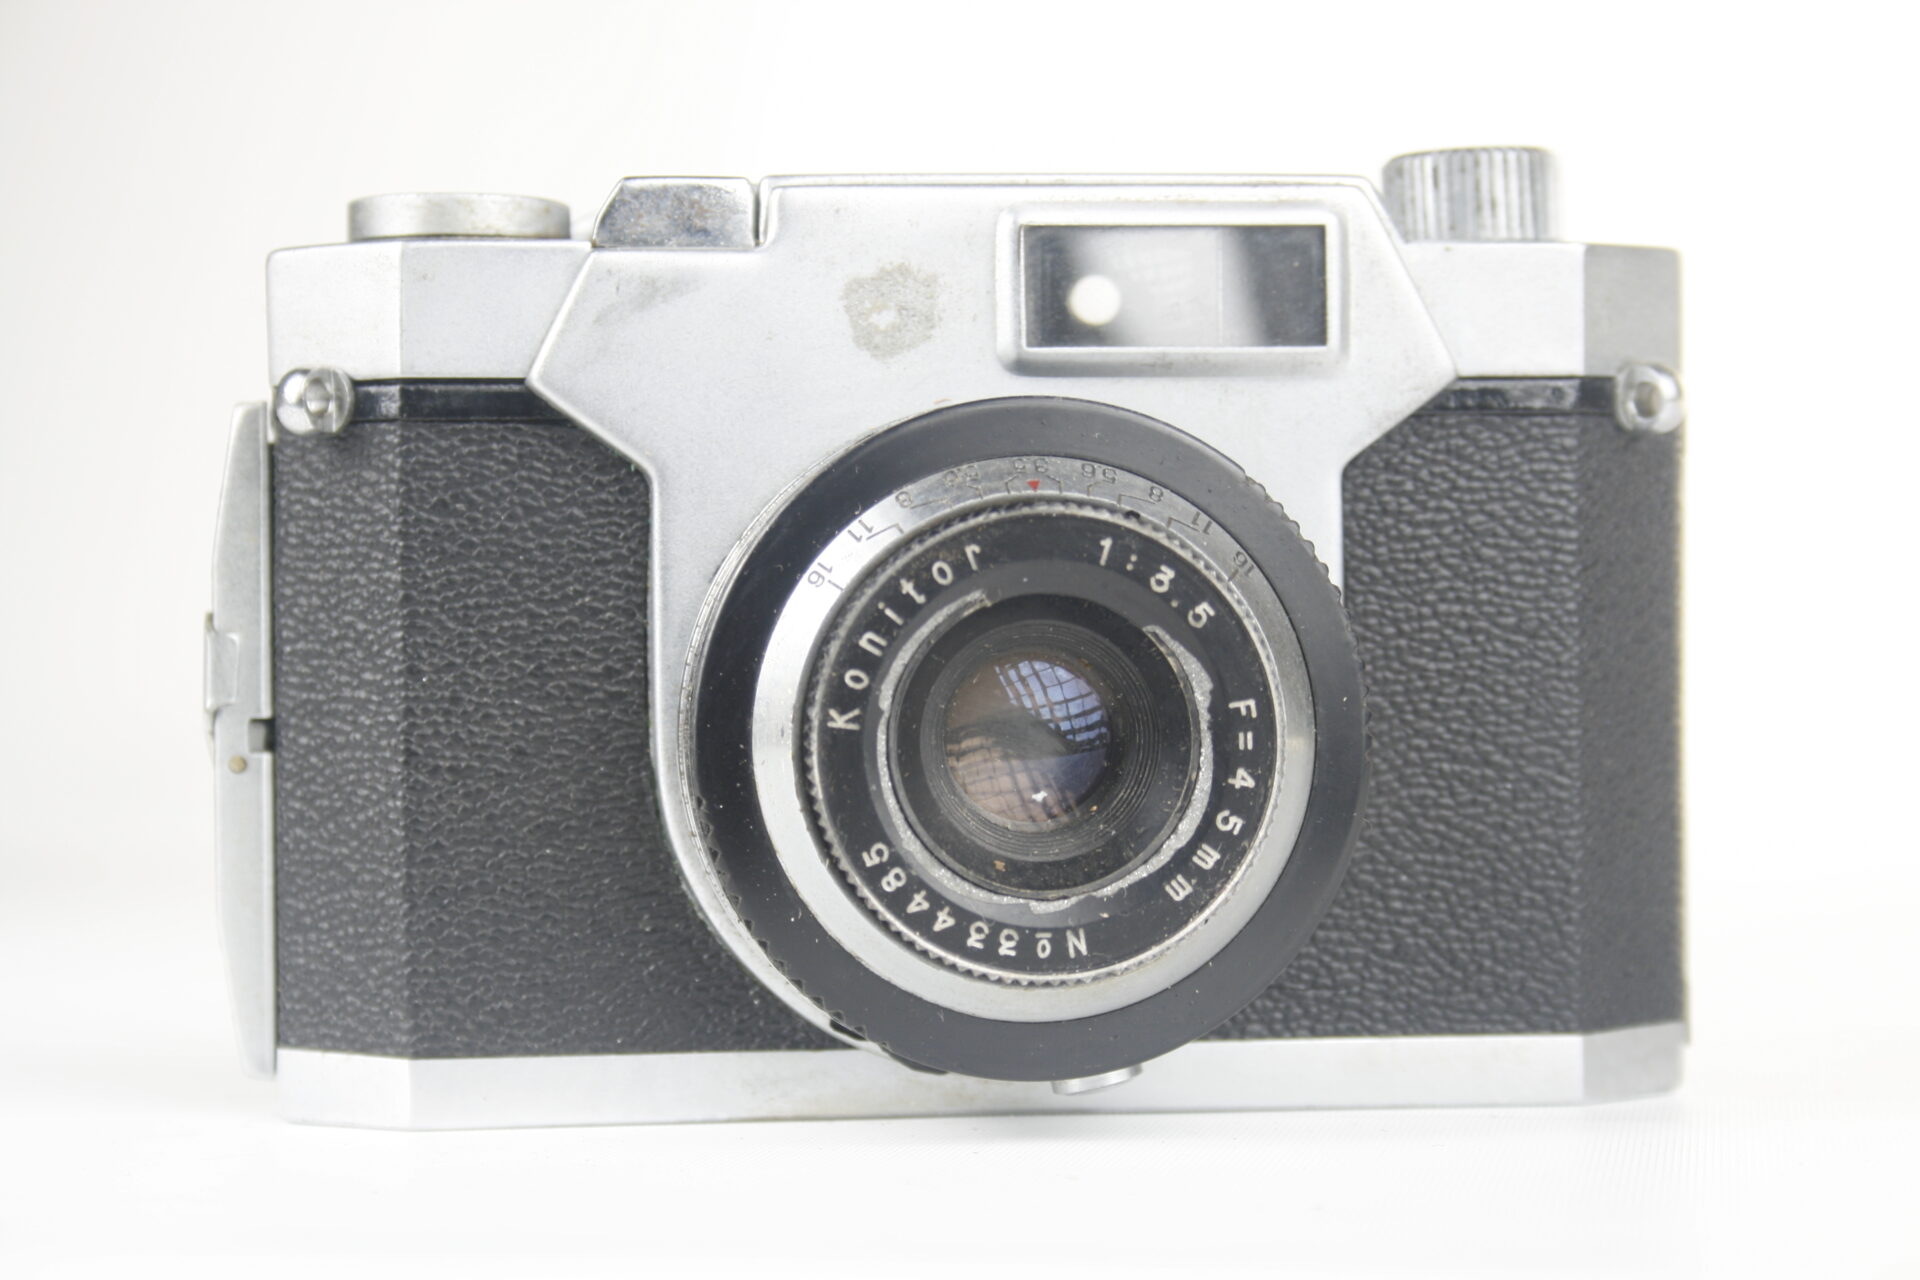 Konica Konilette 35. 35mm viewfinder camera. 1959. Japan.